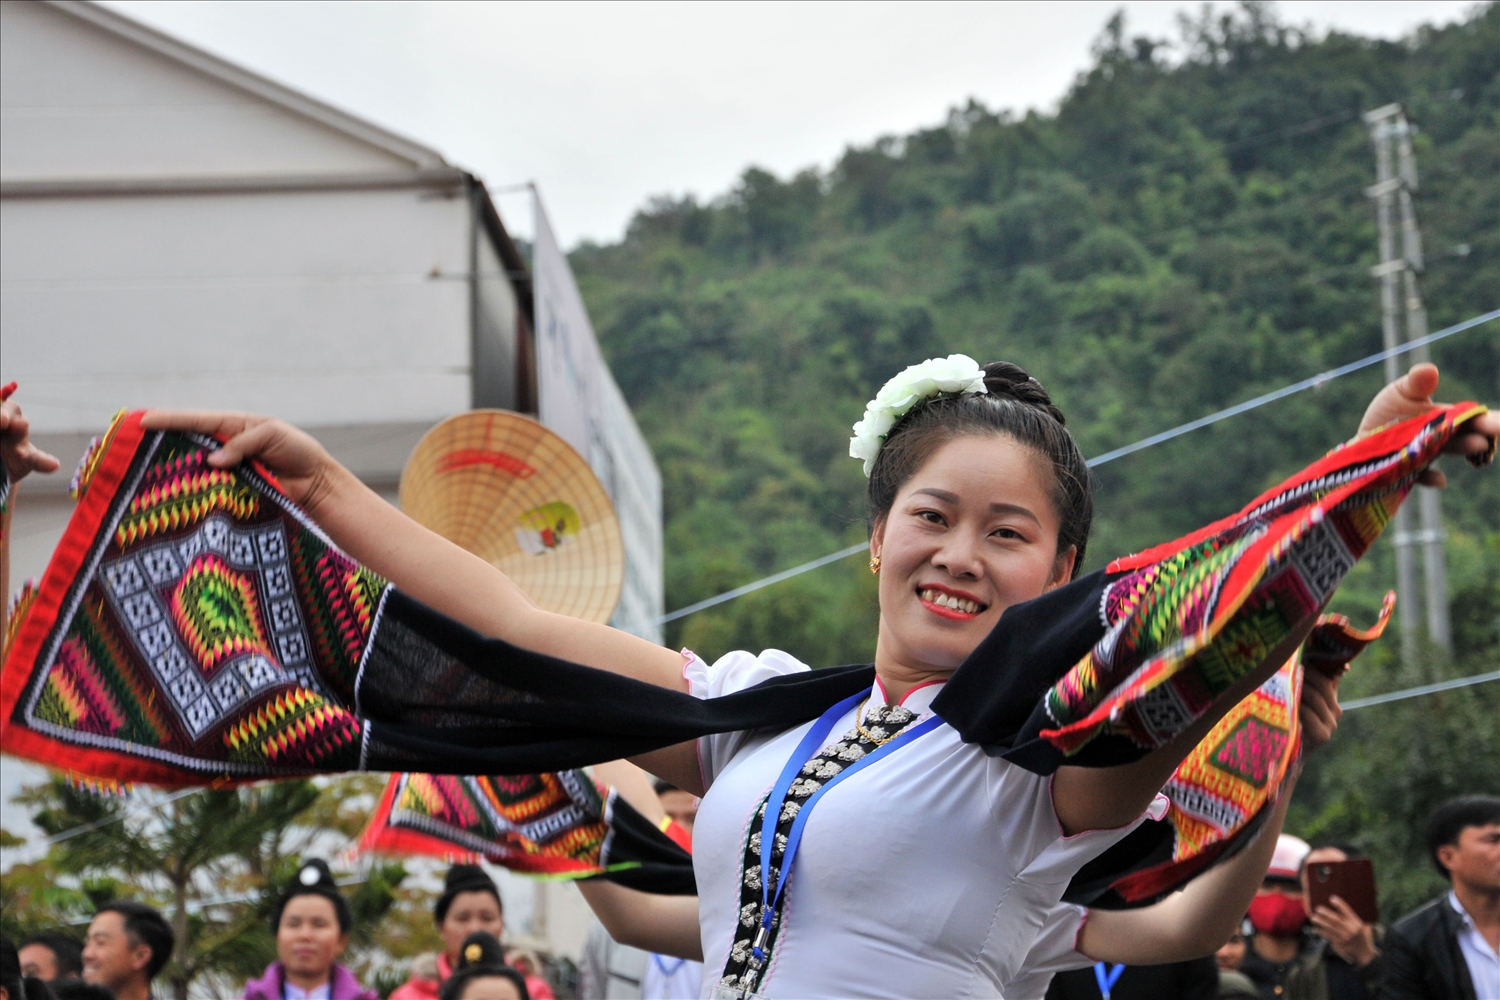 Trong các lễ hội, khăn piêu trở thành đạo cụ nổi bật khi trình diễn các làn diệu dân ca, dân vũ truyền thống của đồng bào Thái.